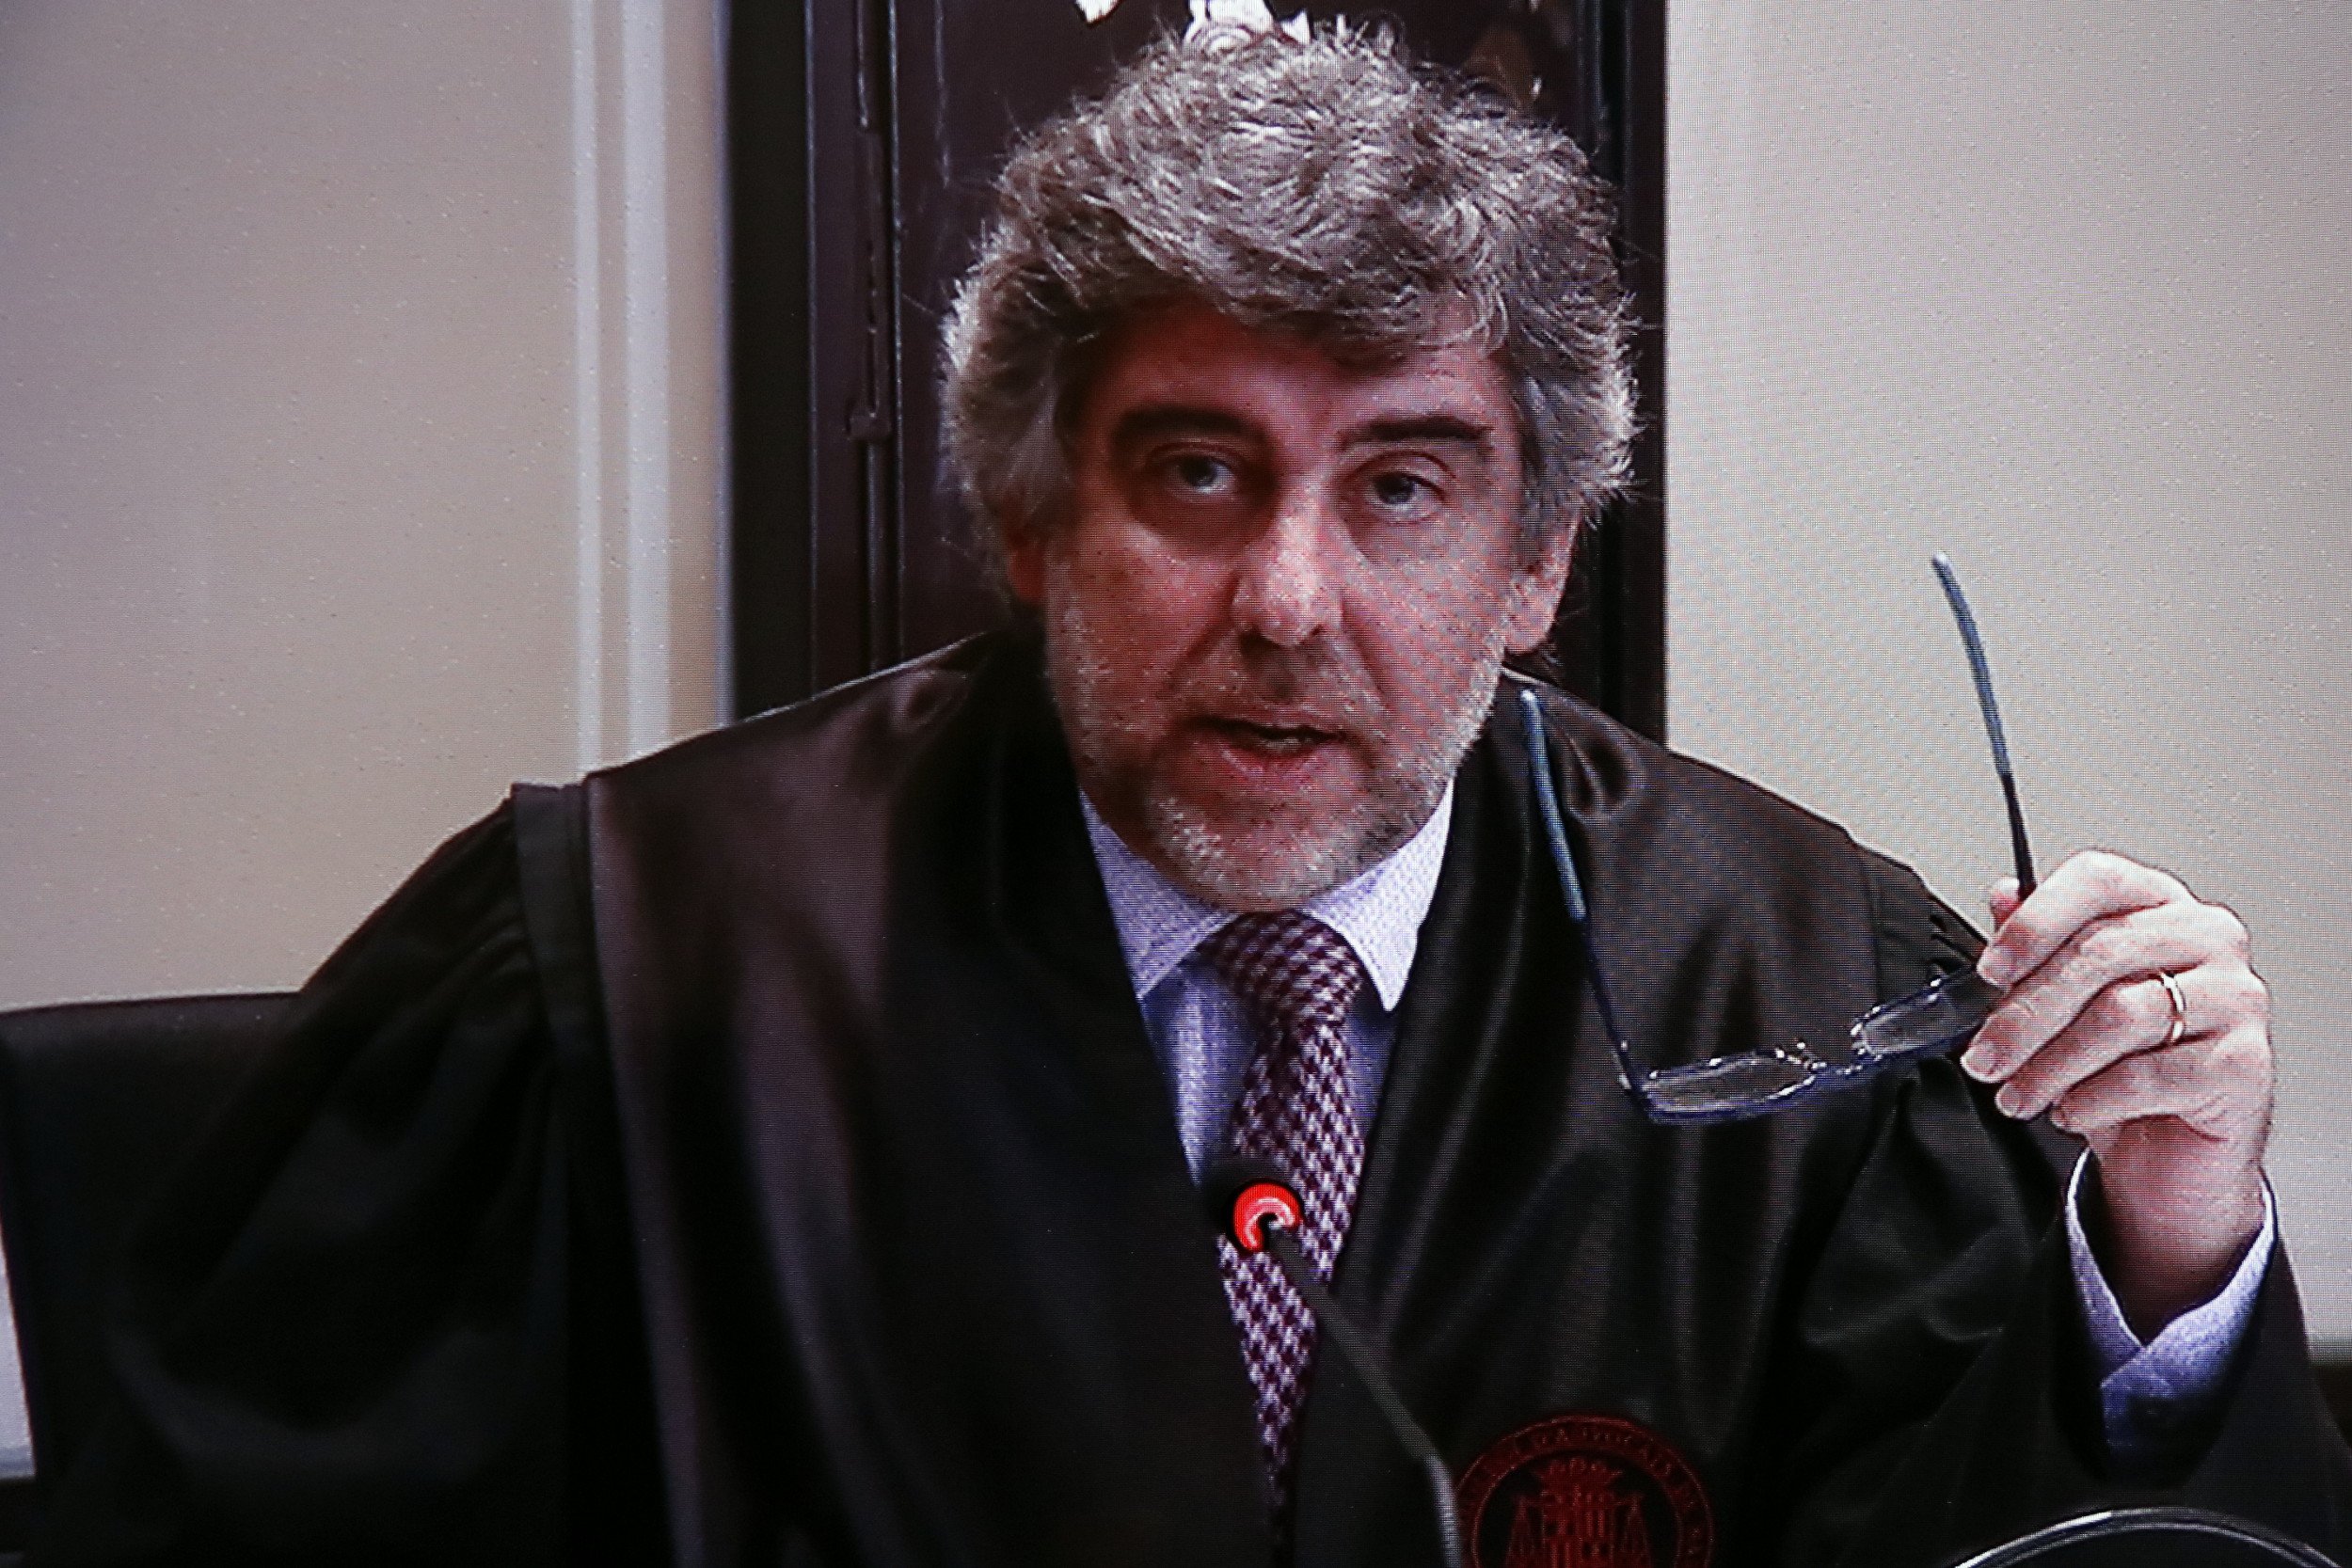 L'advocat de Turull i Rull: "No confio que Llarena accepti la petició de llibertat"